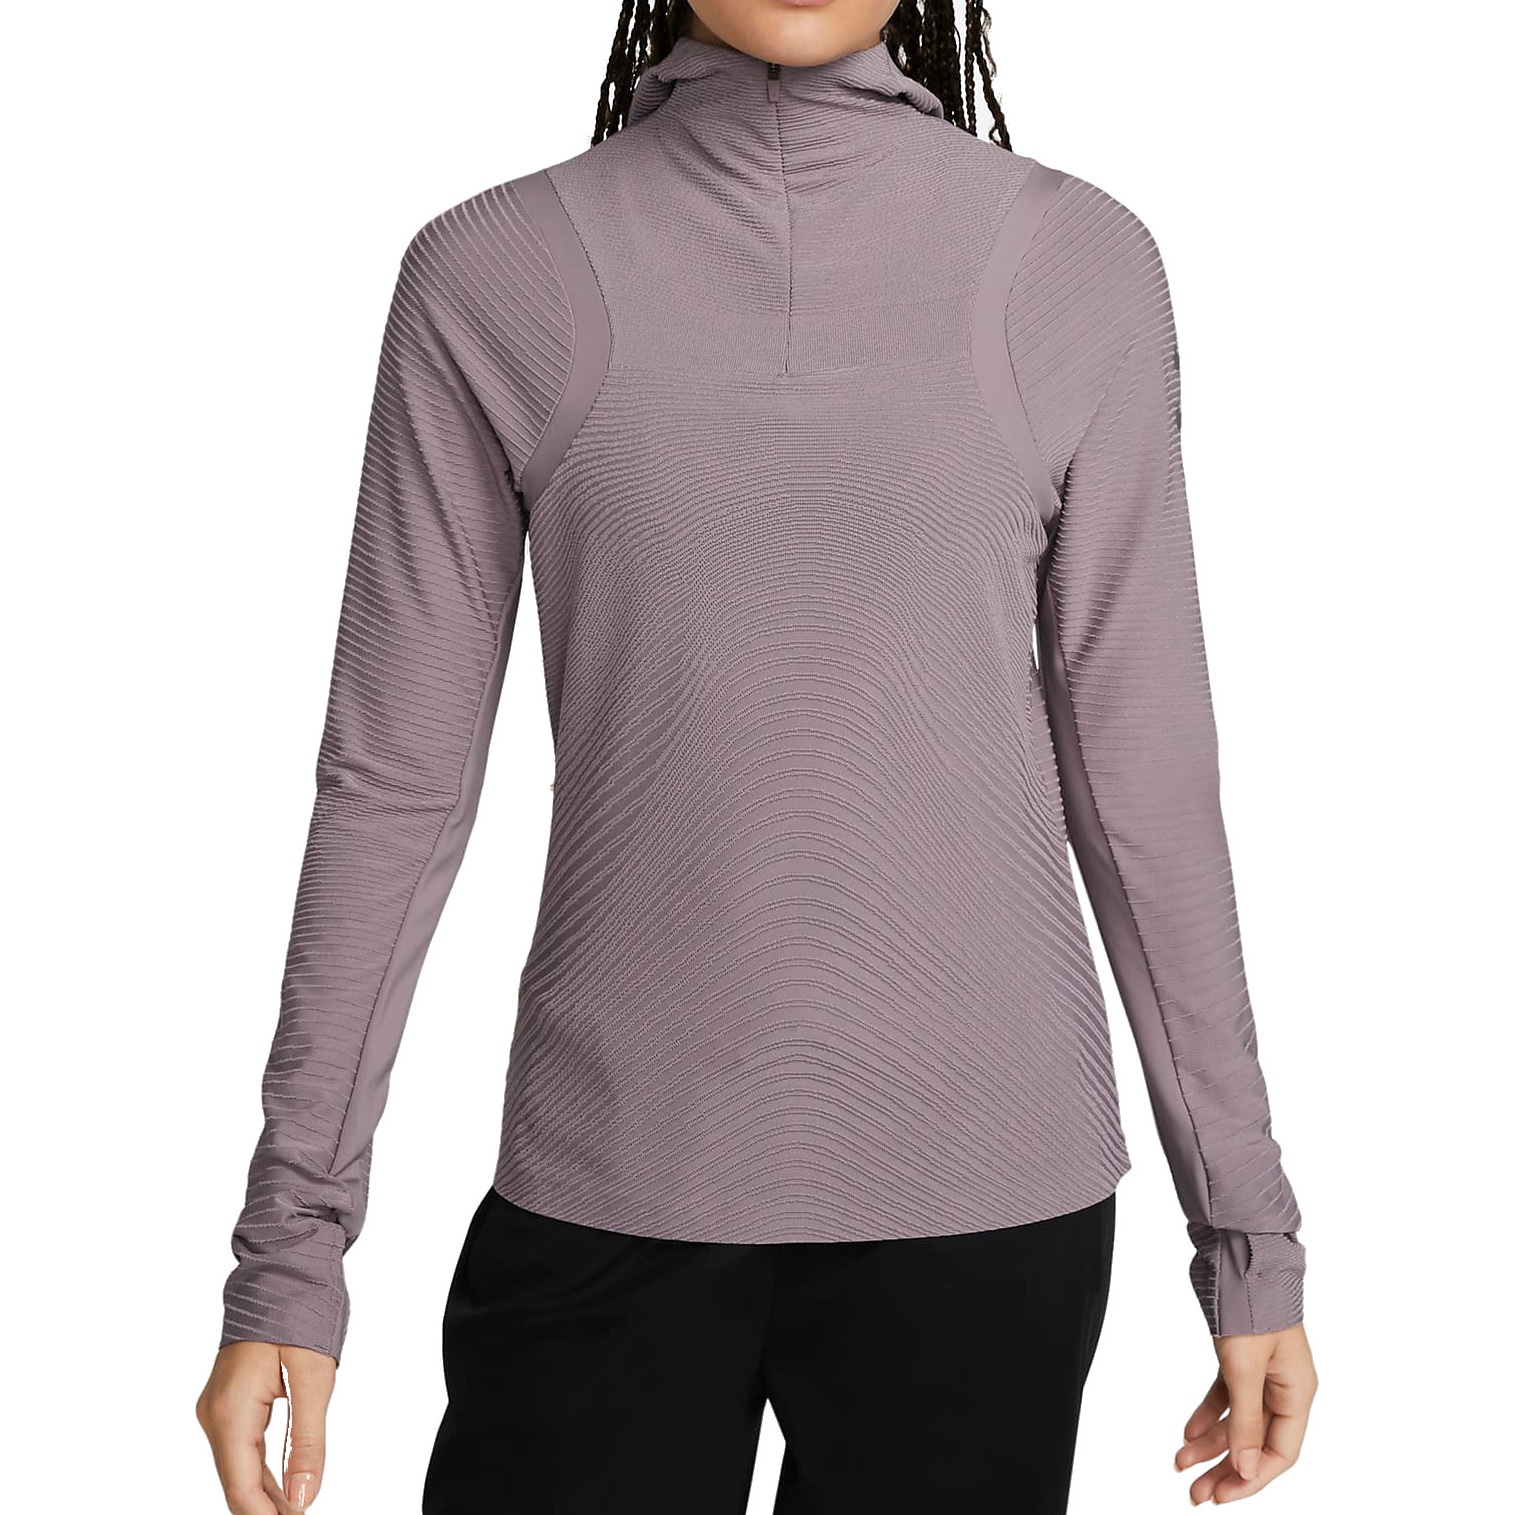 Produktbild von Nike Therma-FIT ADV Run Division Lauf-Mittelschicht für Damen - purple smoke/black DQ6649-531